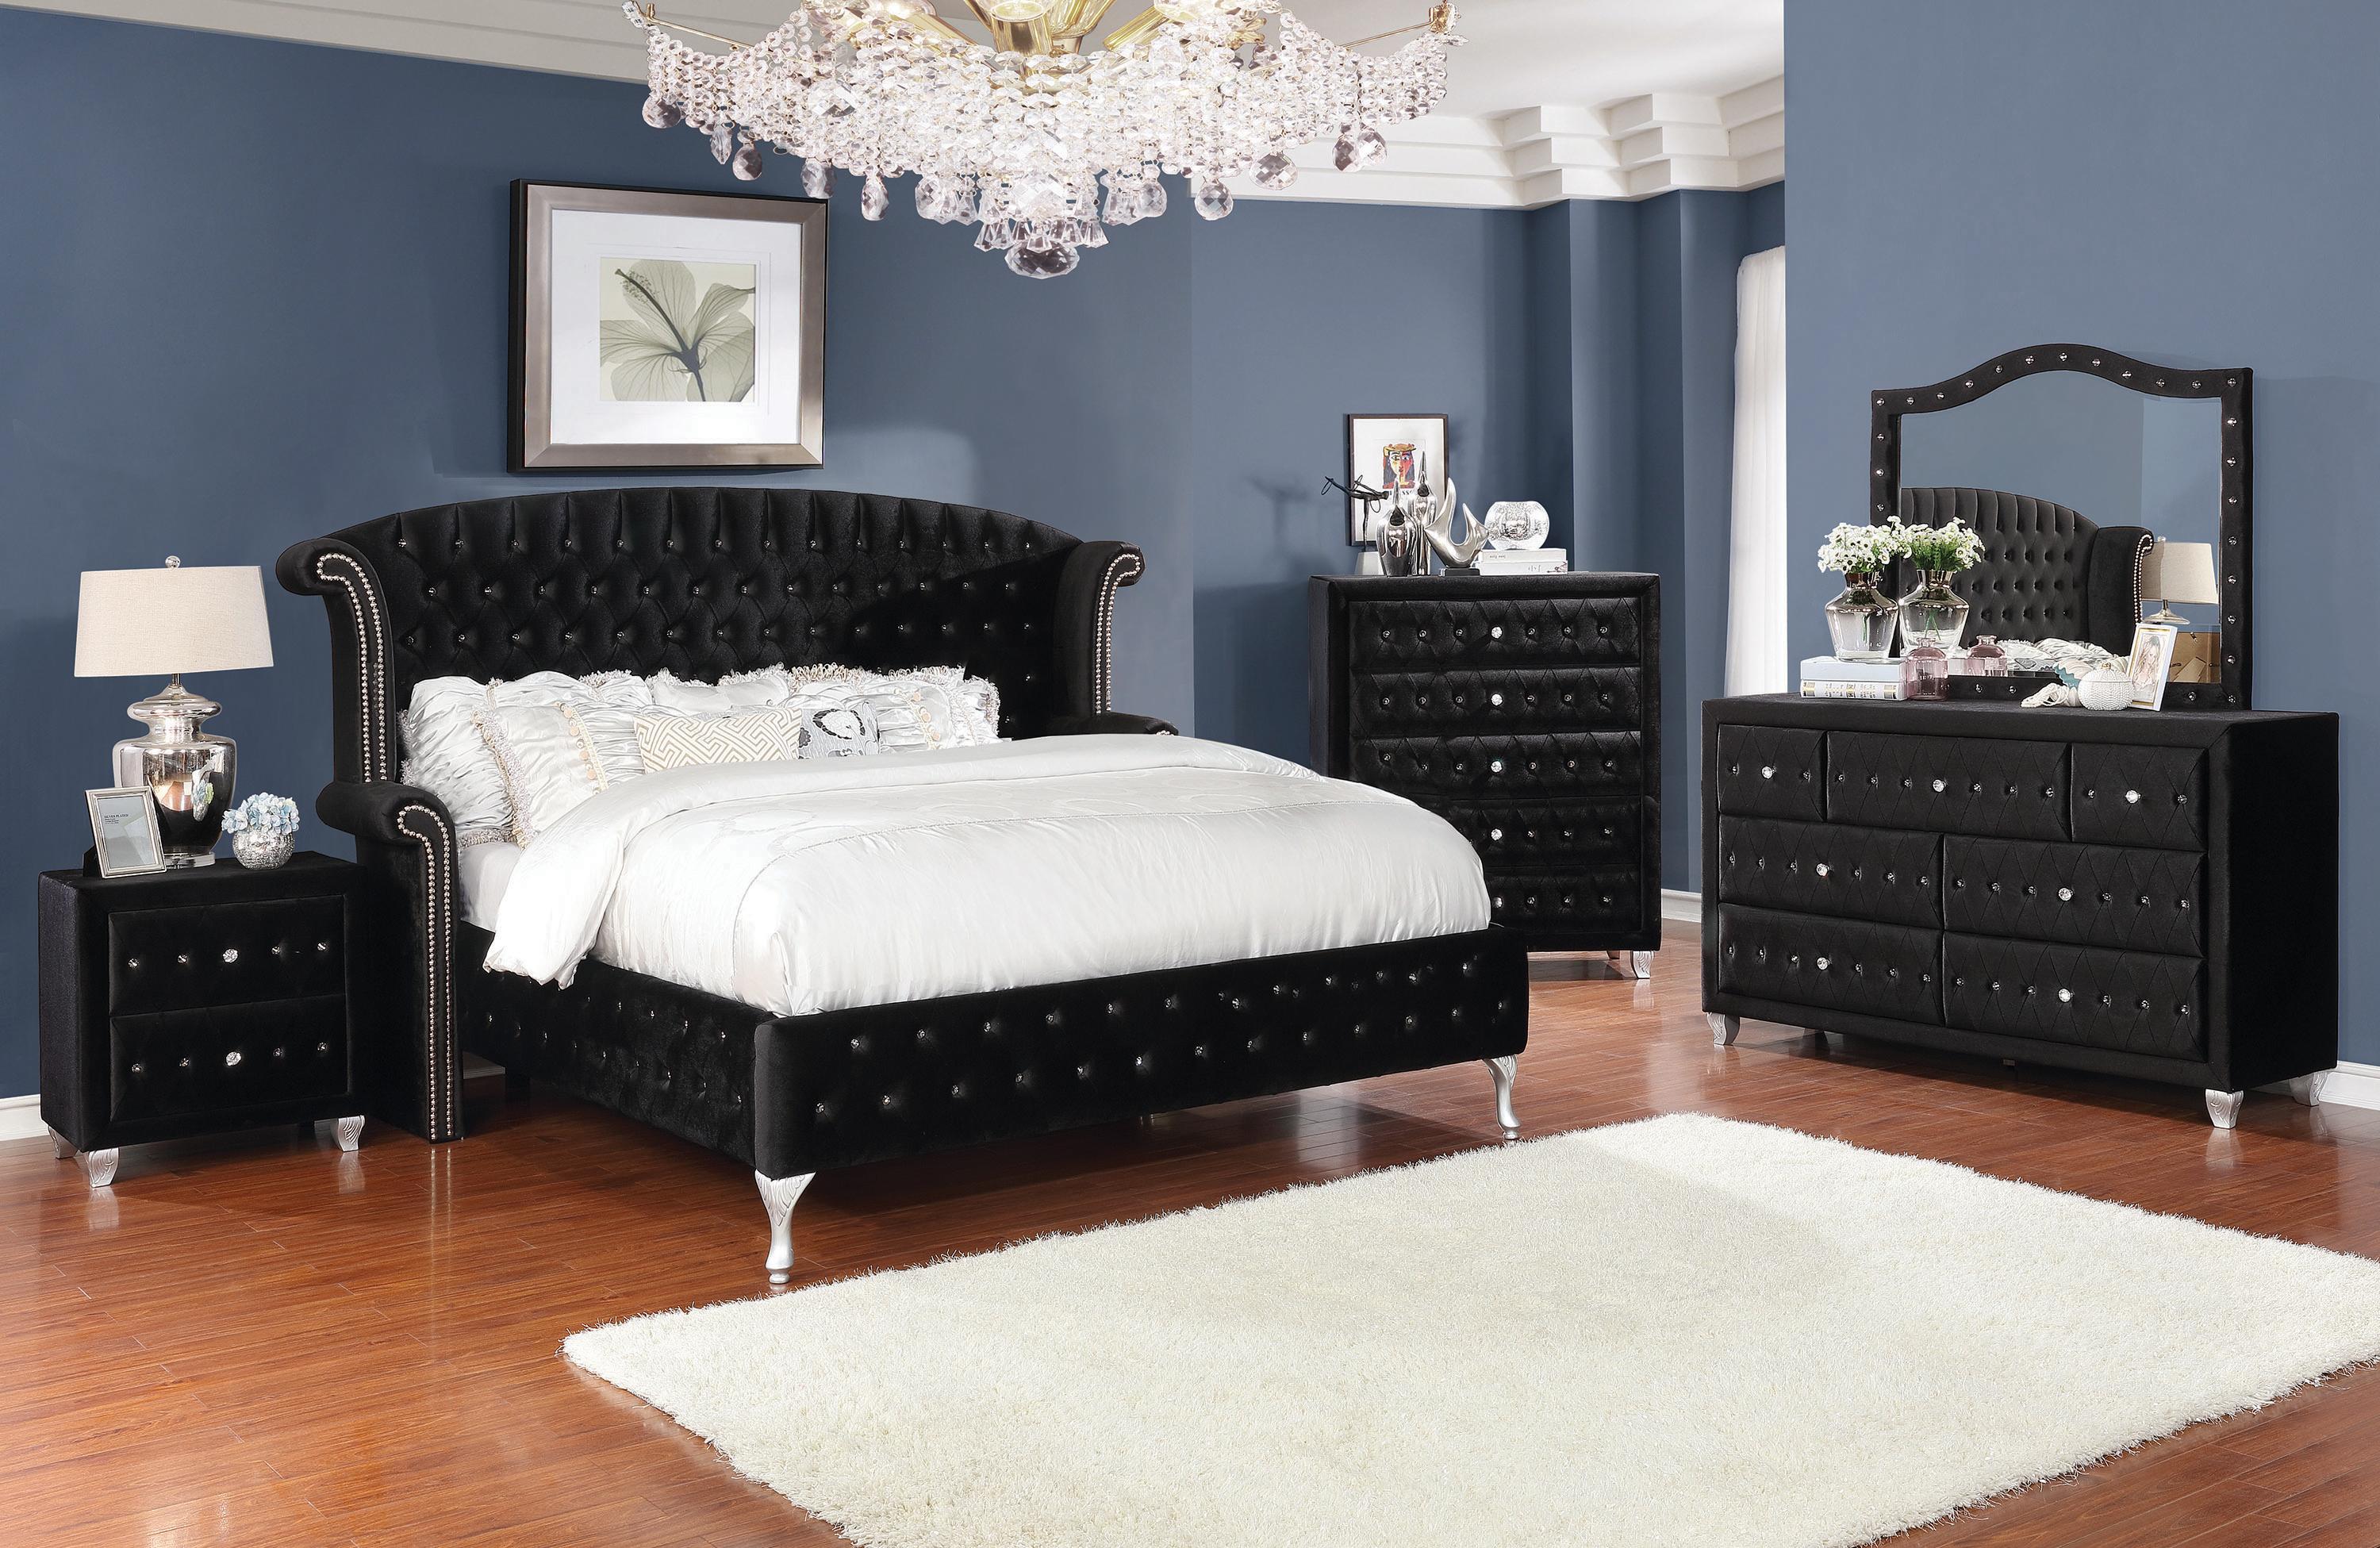 

    
Glam Black Velvet King Bedroom Set 6pcs Coaster 206101KE Deanna
